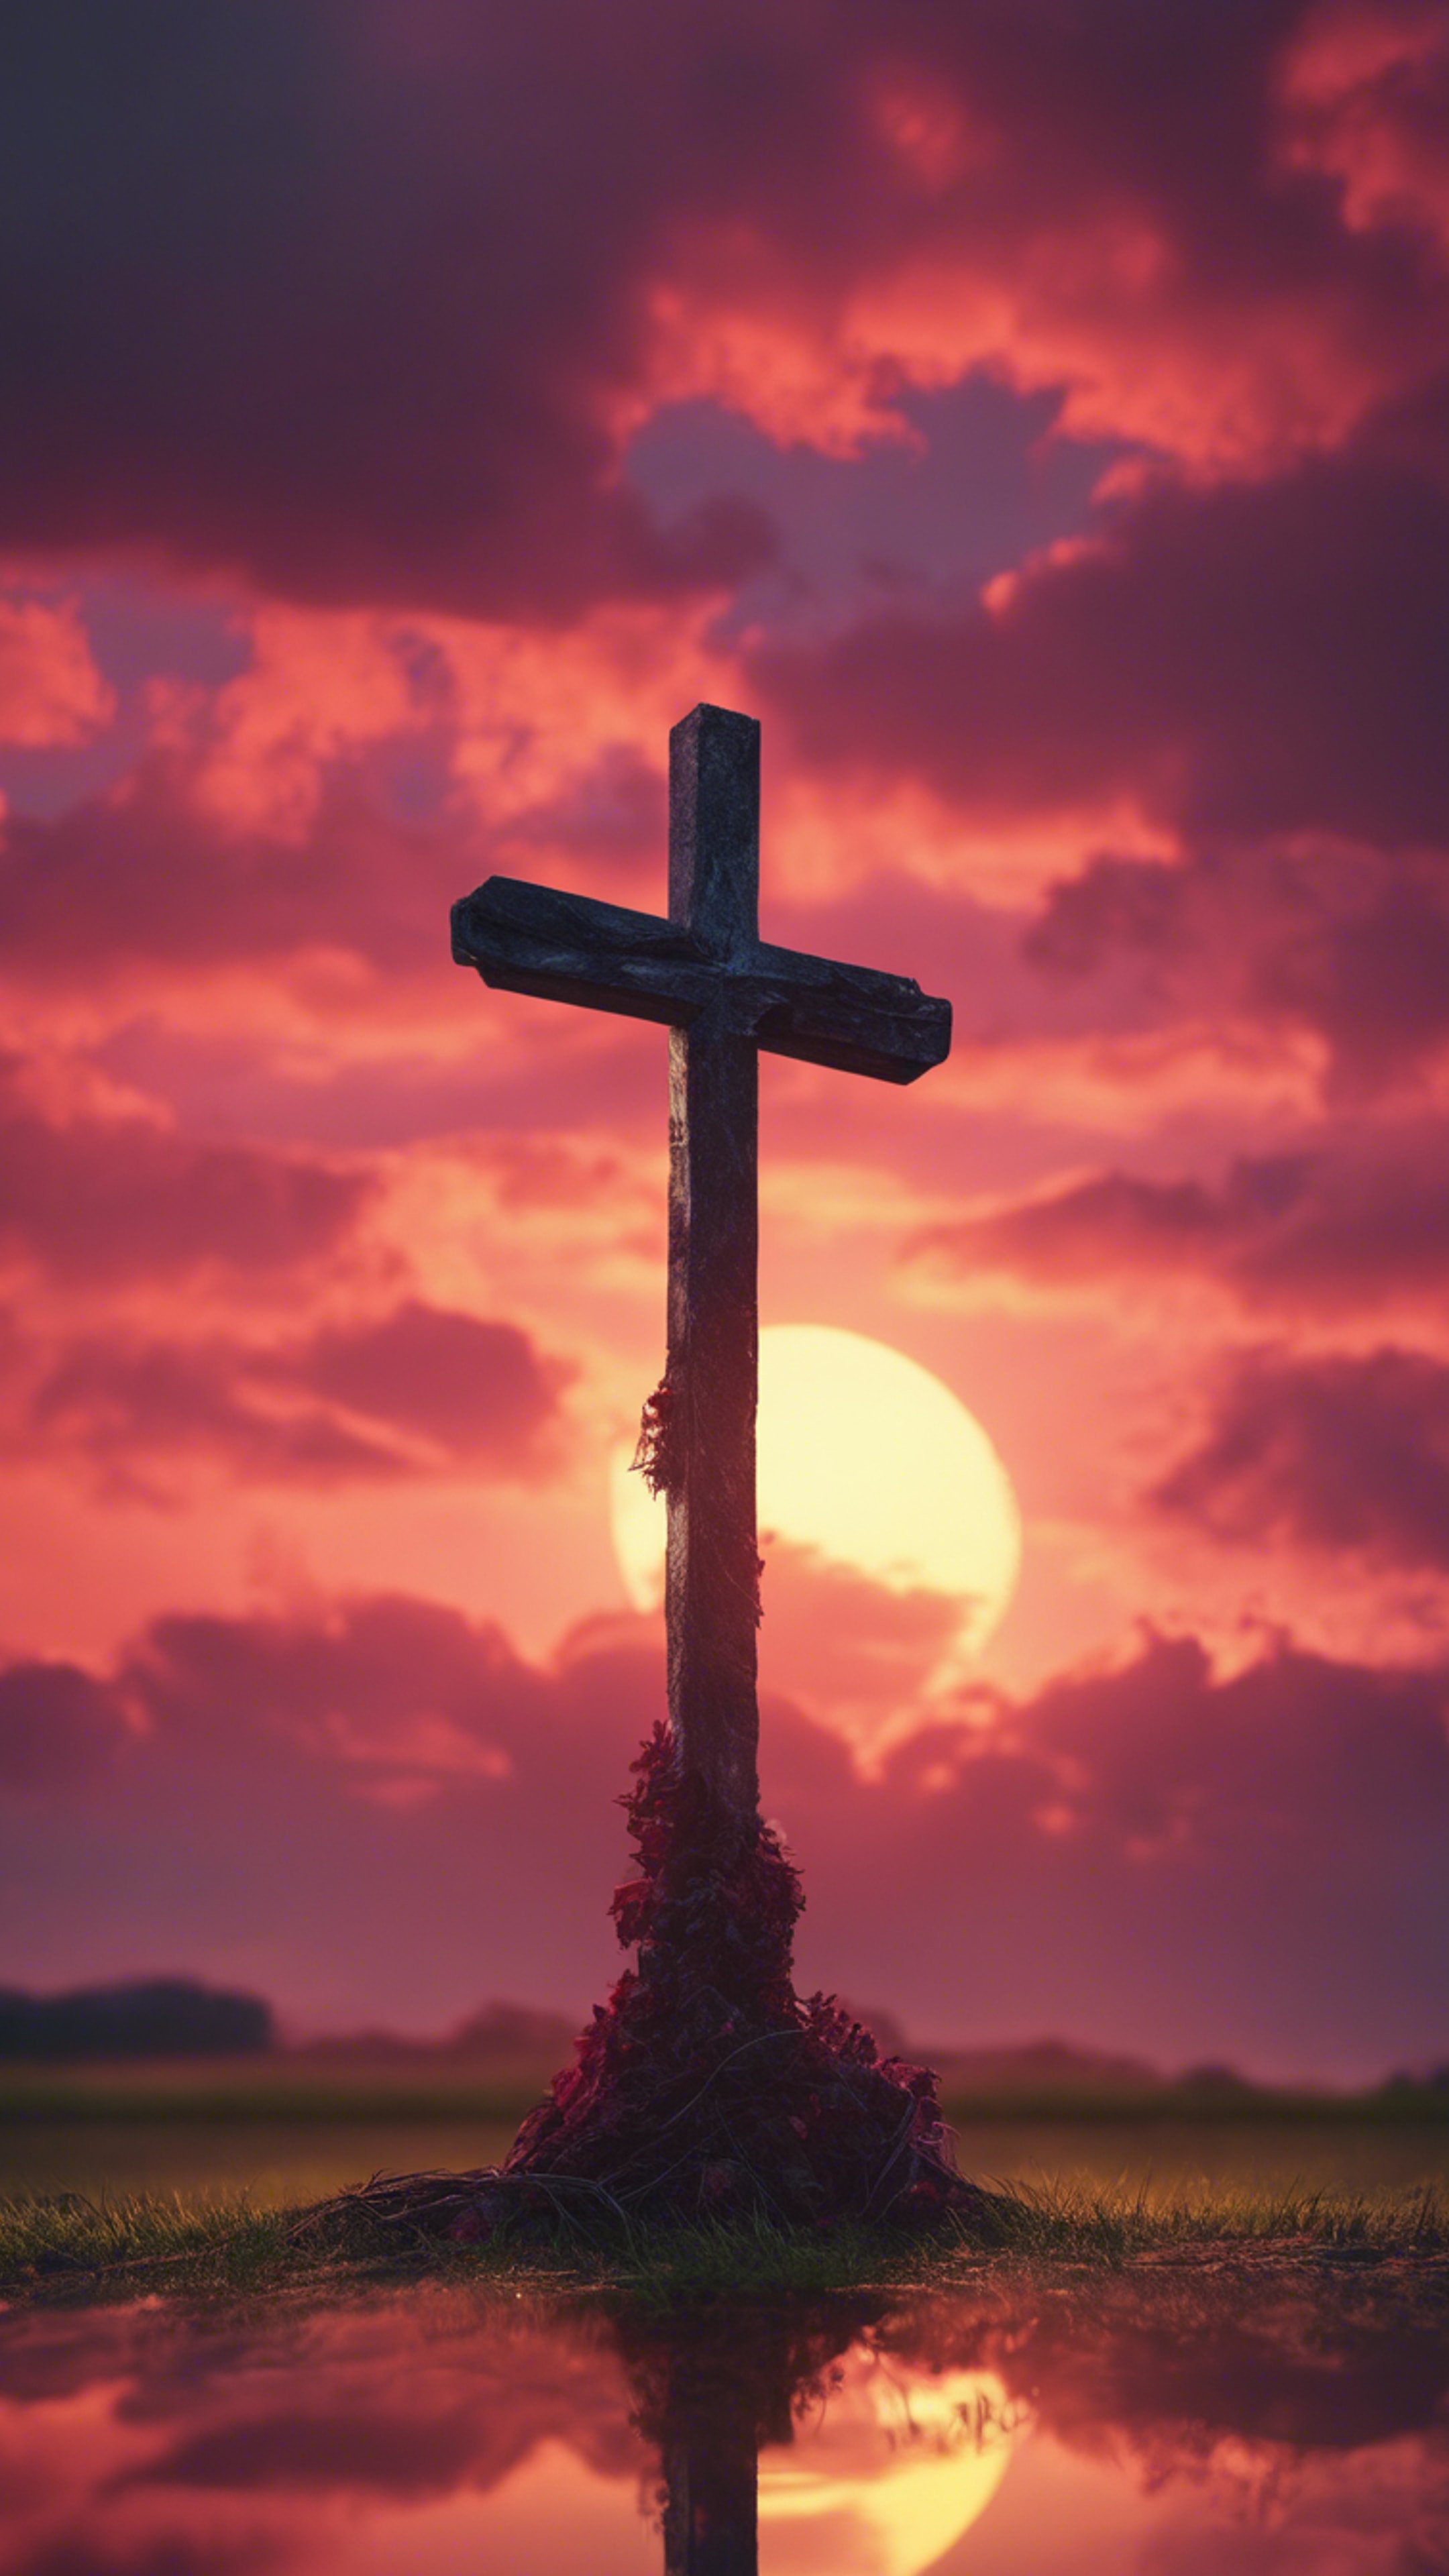 A cross standing against the crimson colors of a sunset sky. duvar kağıdı[b41808c7967b41aa9e40]